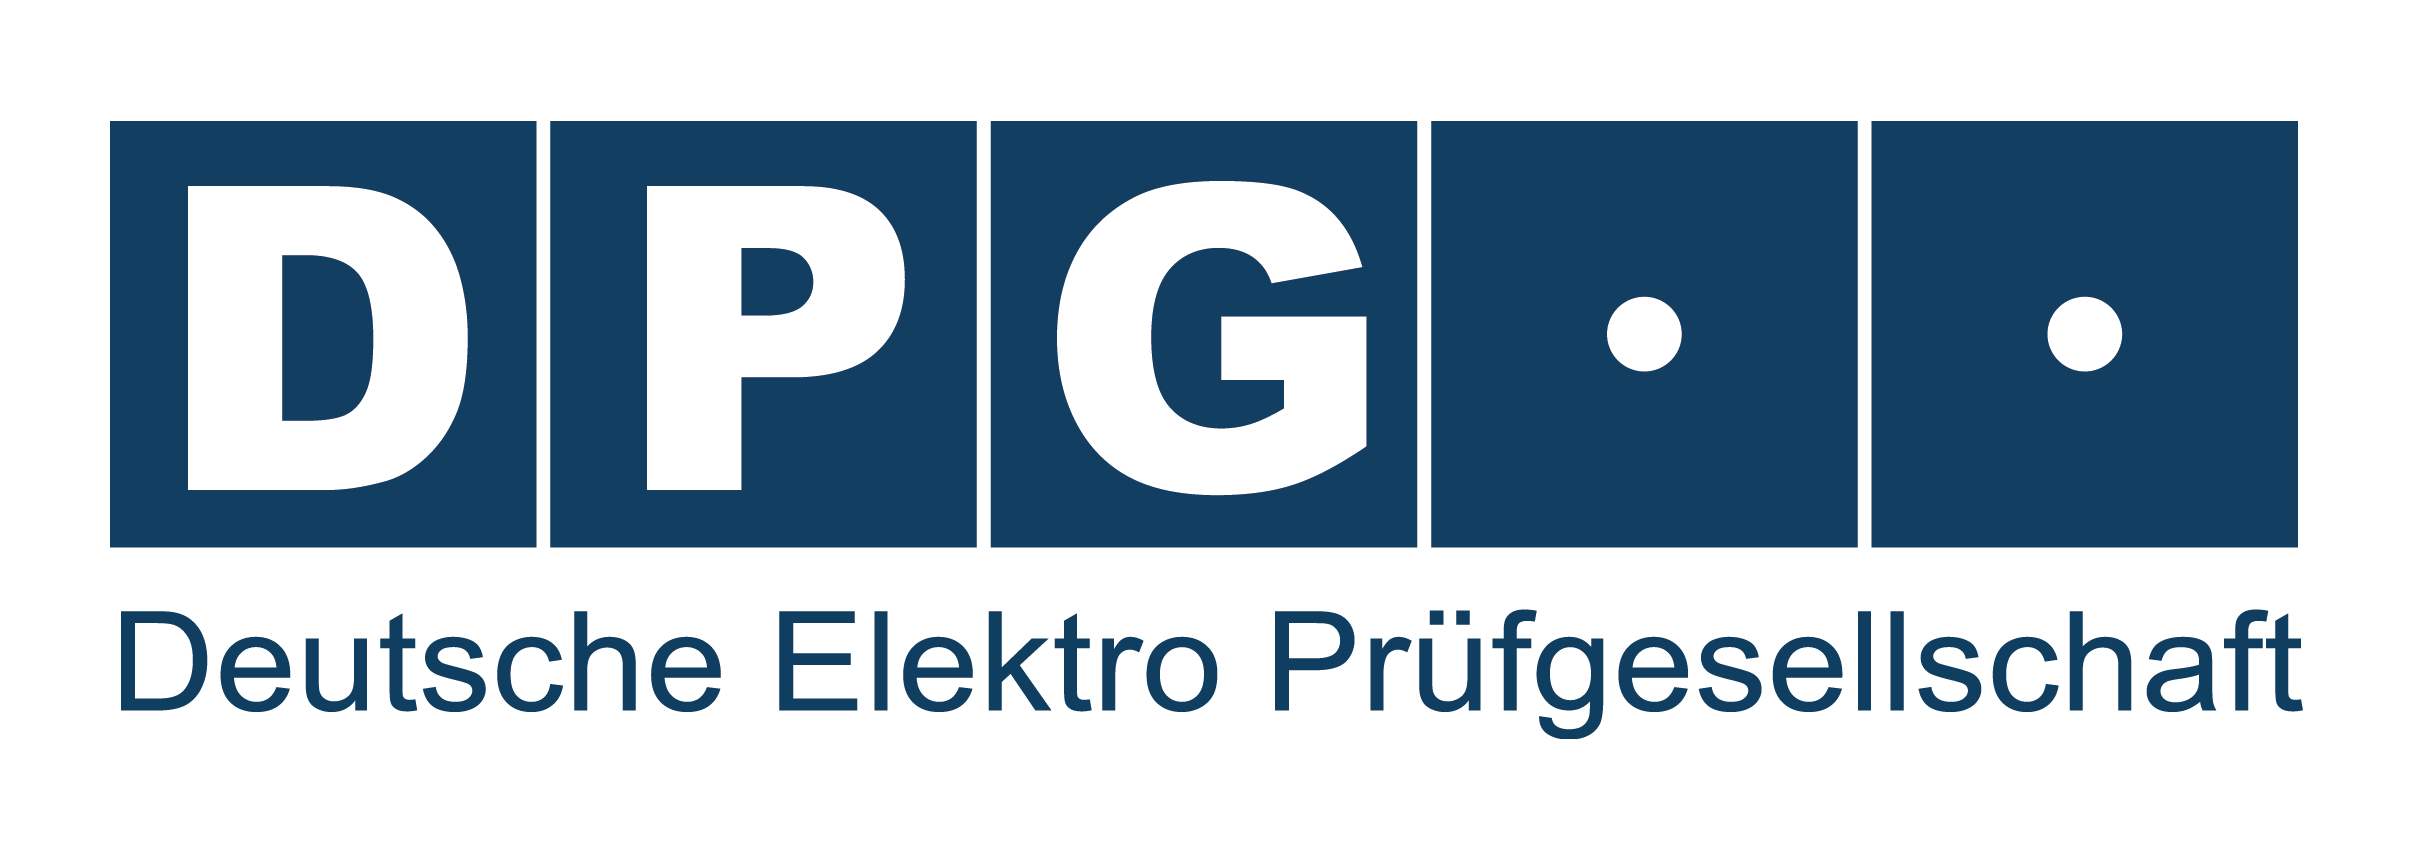 DPG Logo - DPG Deutsche Elektro Prüfgesellschaft | Qualität ist nicht verhandelbar.